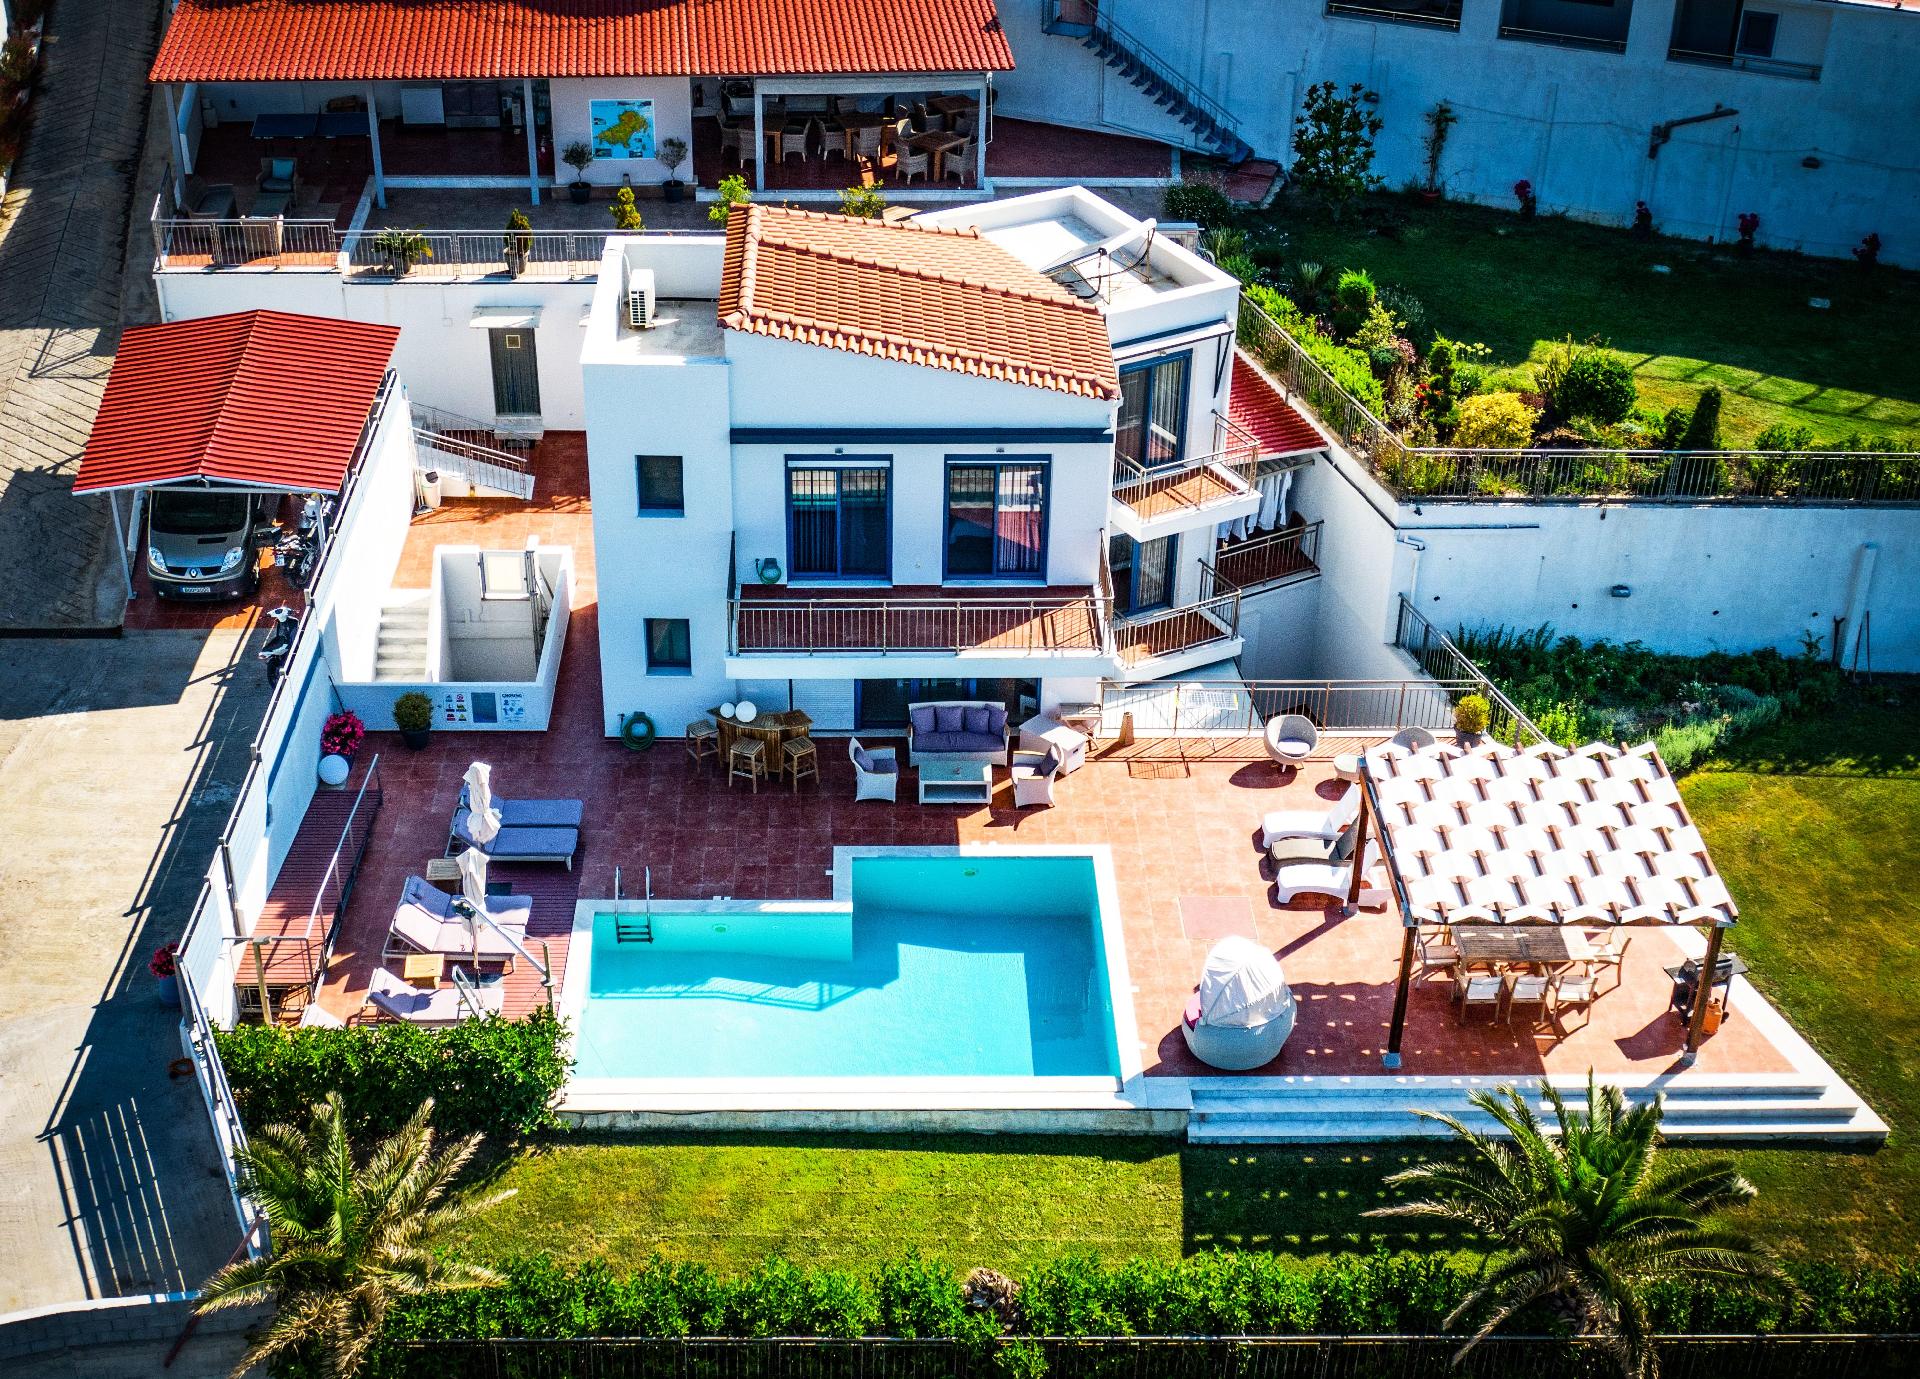 Ferienhaus mit Privatpool für 10 Personen ca. Ferienhaus in Griechenland